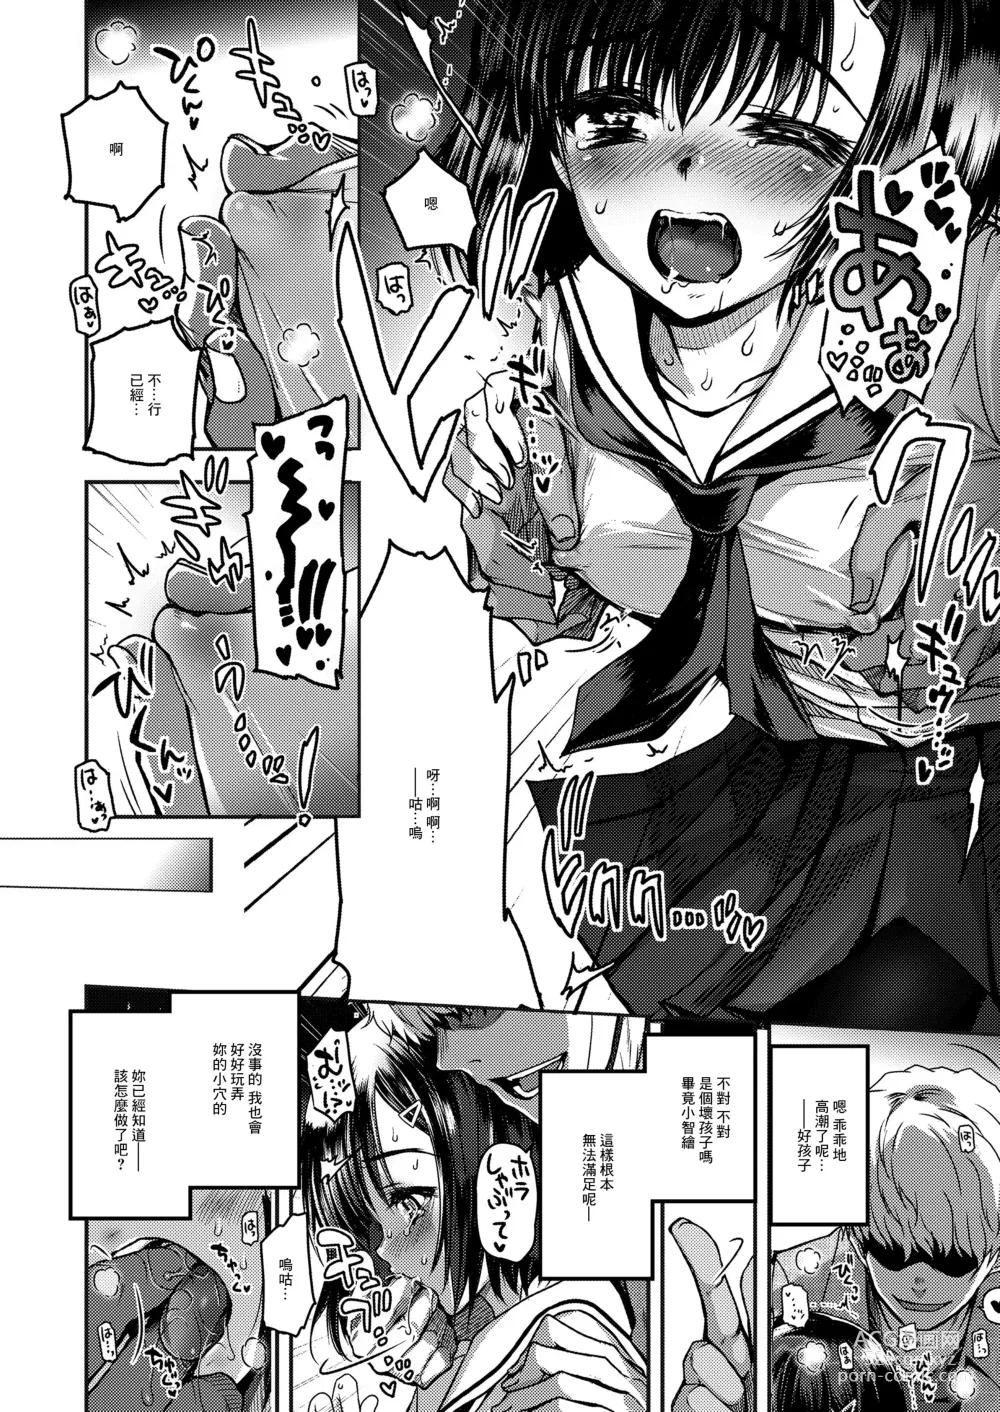 Page 4 of manga Re: Natsumushi